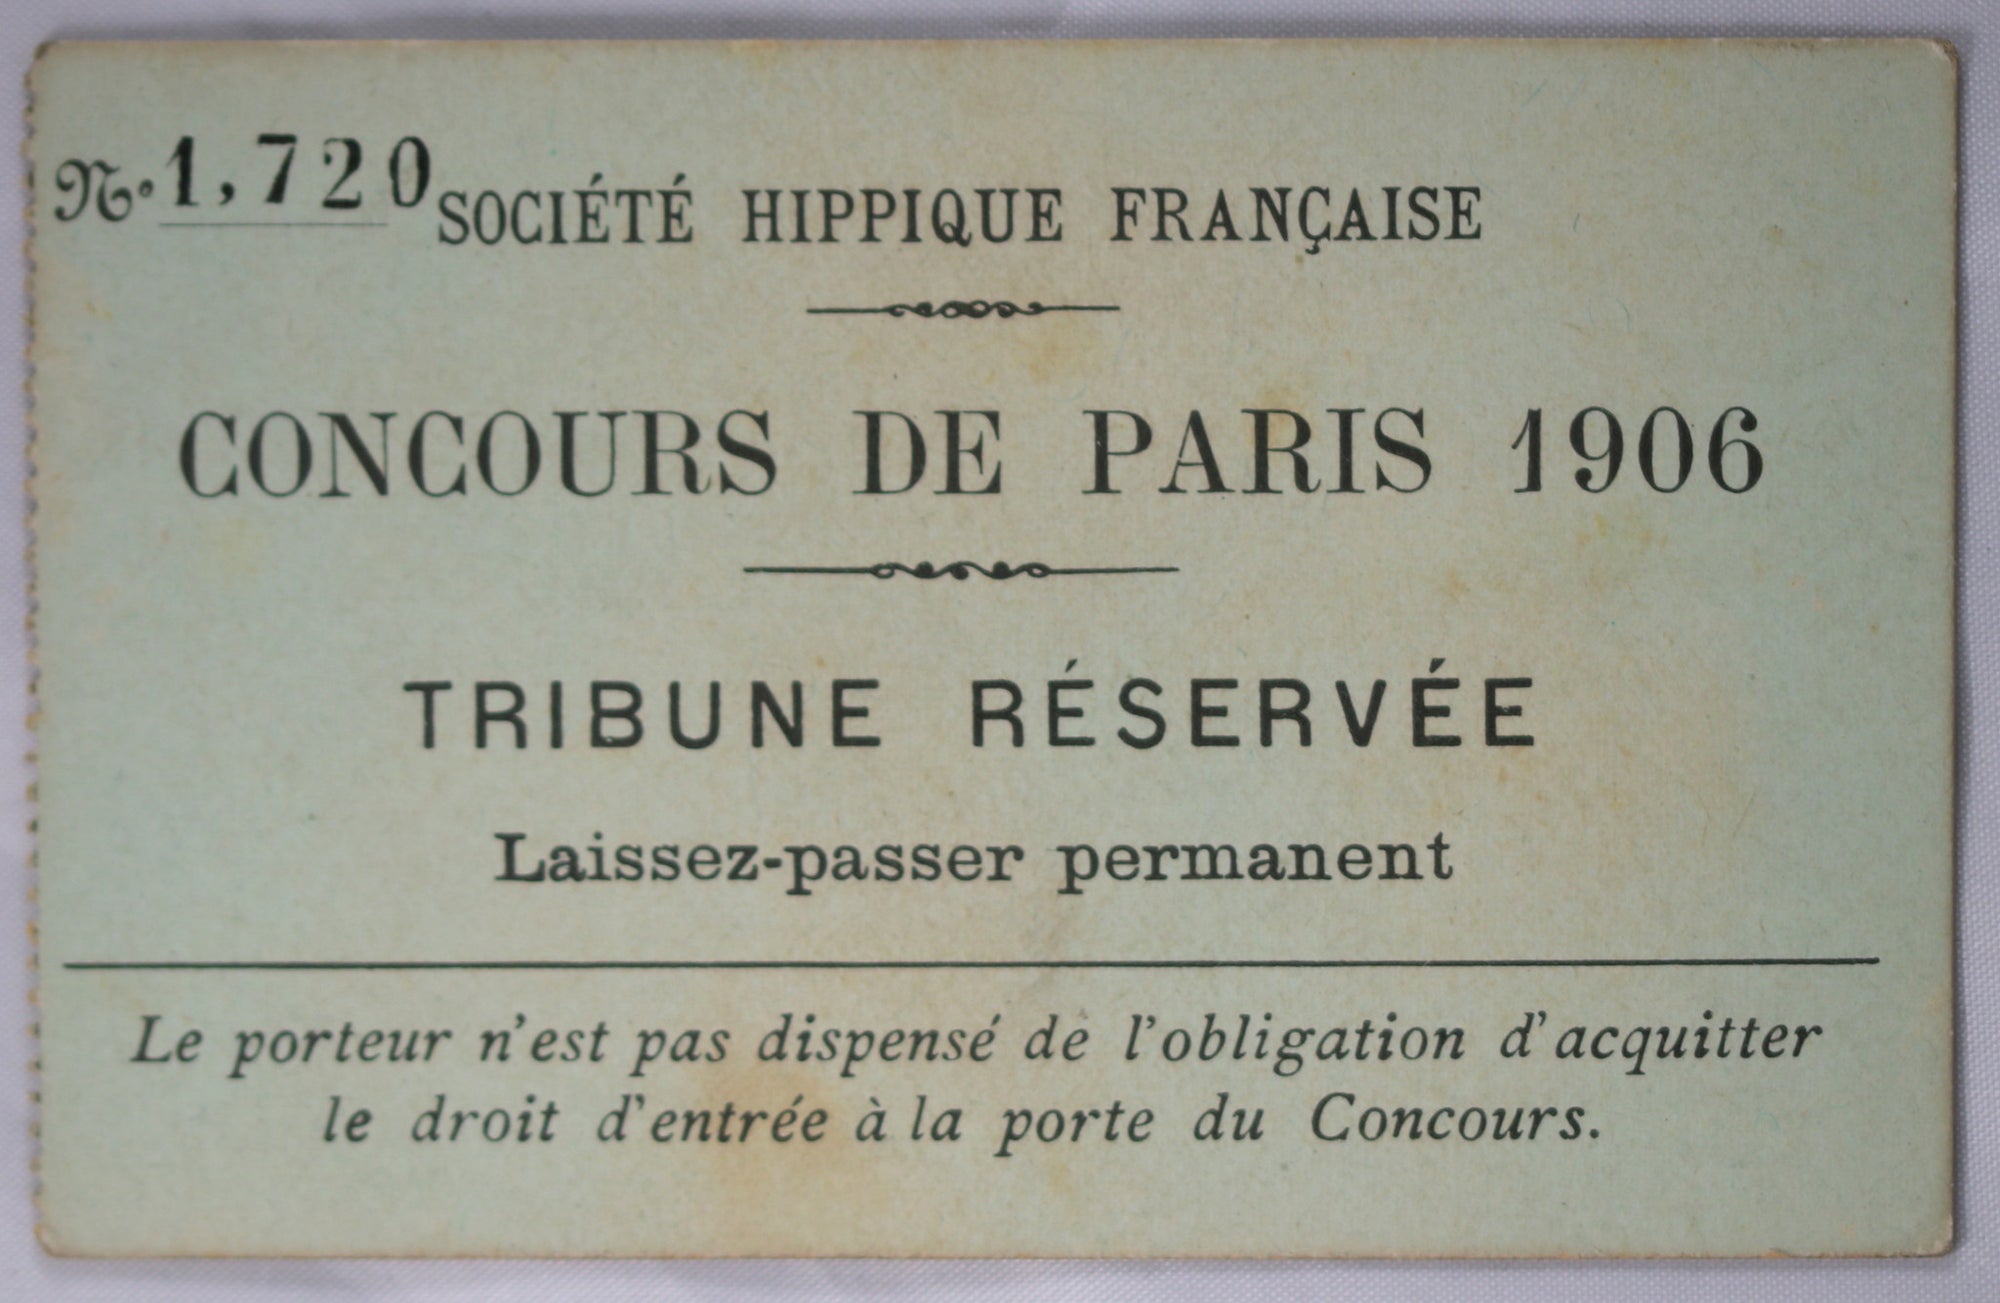 1906 Concours de Paris (hippique) - carte d'entrée Tribune Réservée